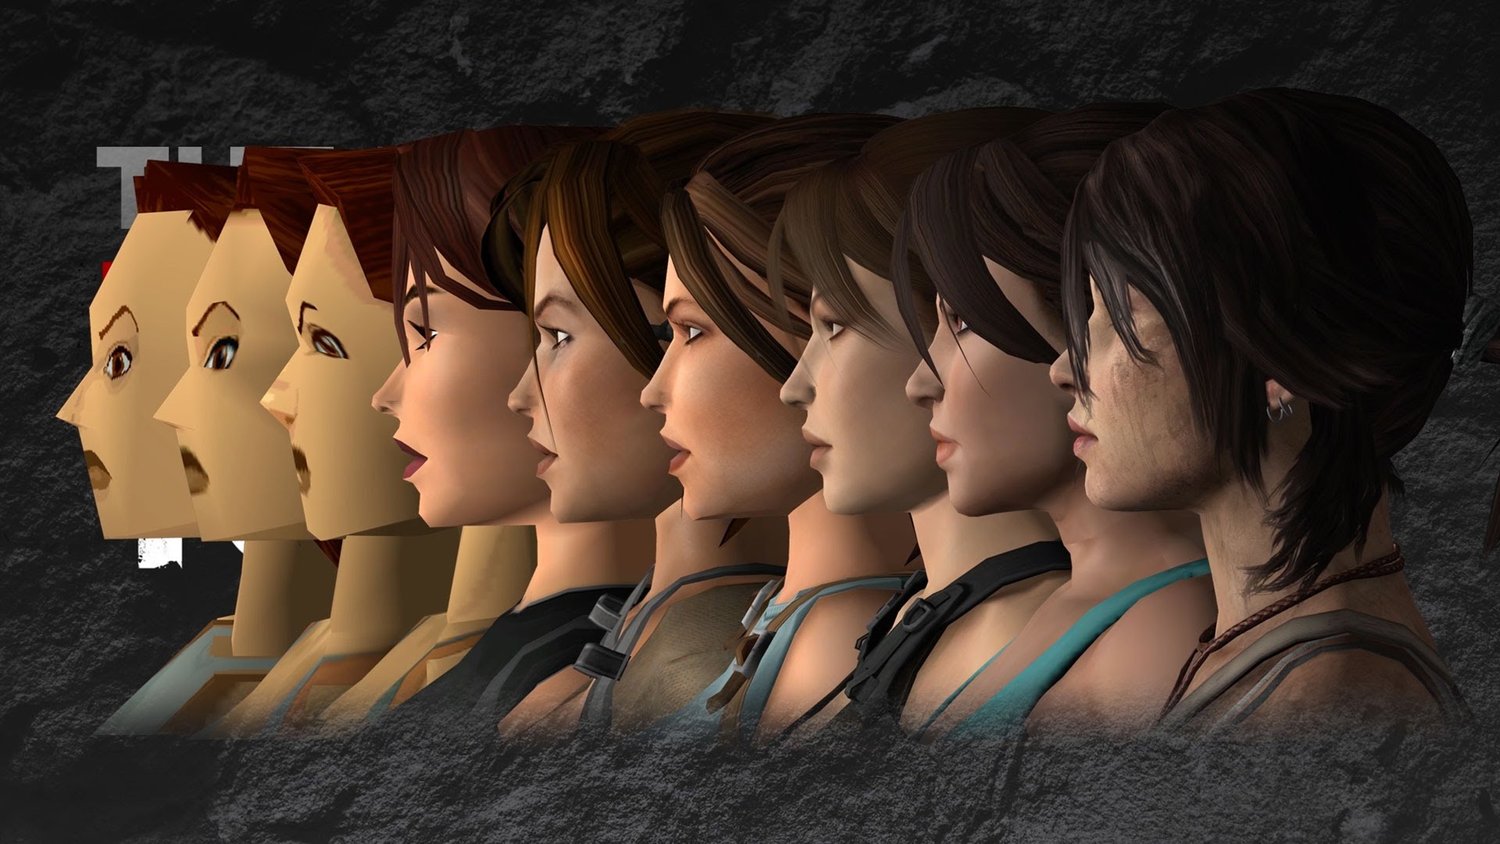 1500x844, 193 Kb / Лара Крофт, Lara Croft, сравнение